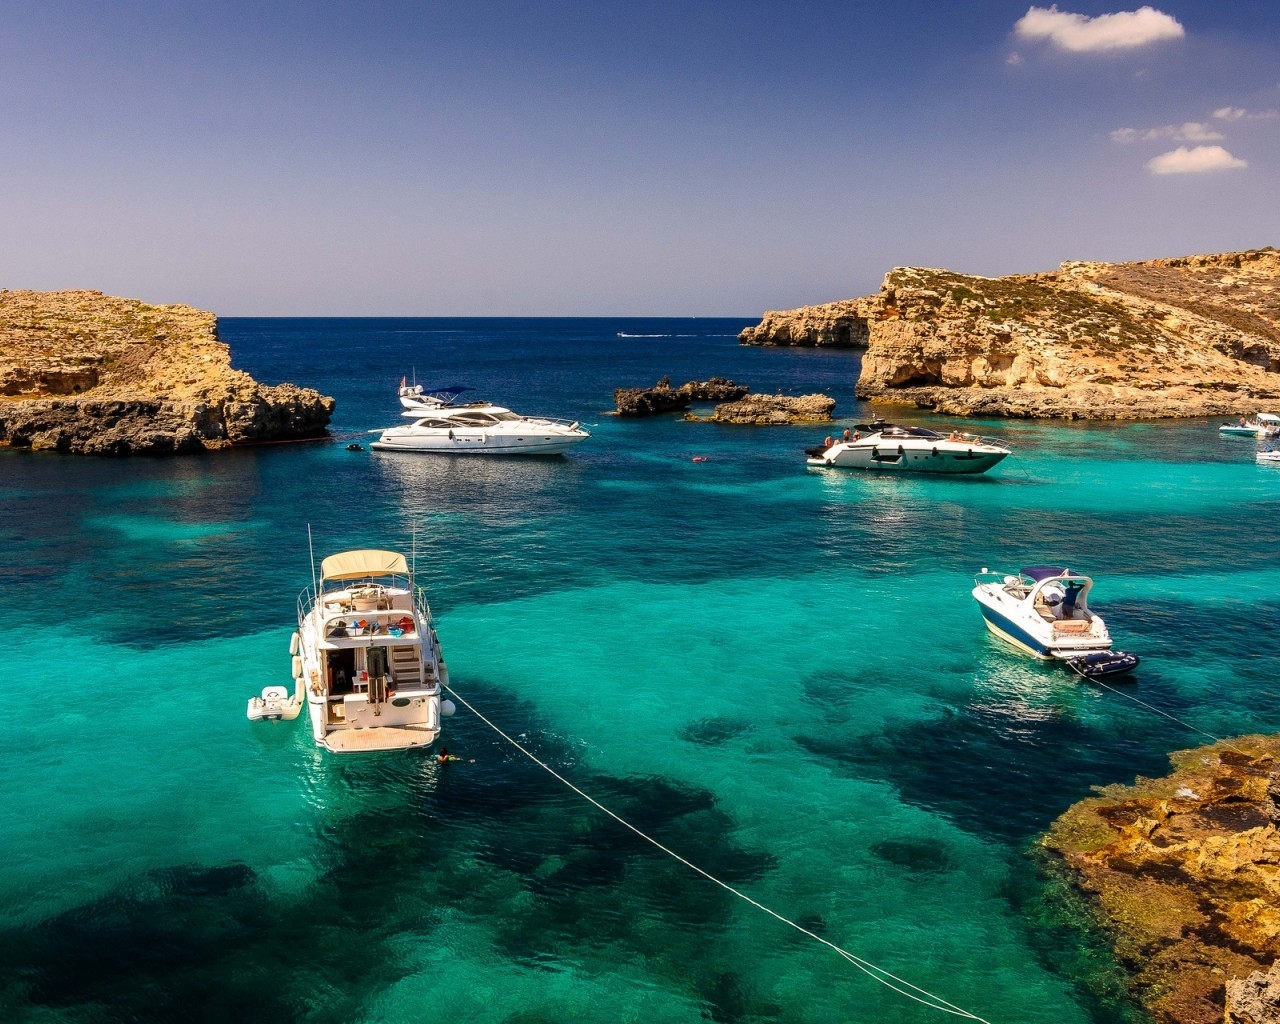 Malta Sea Corner for 1280 x 1024 resolution